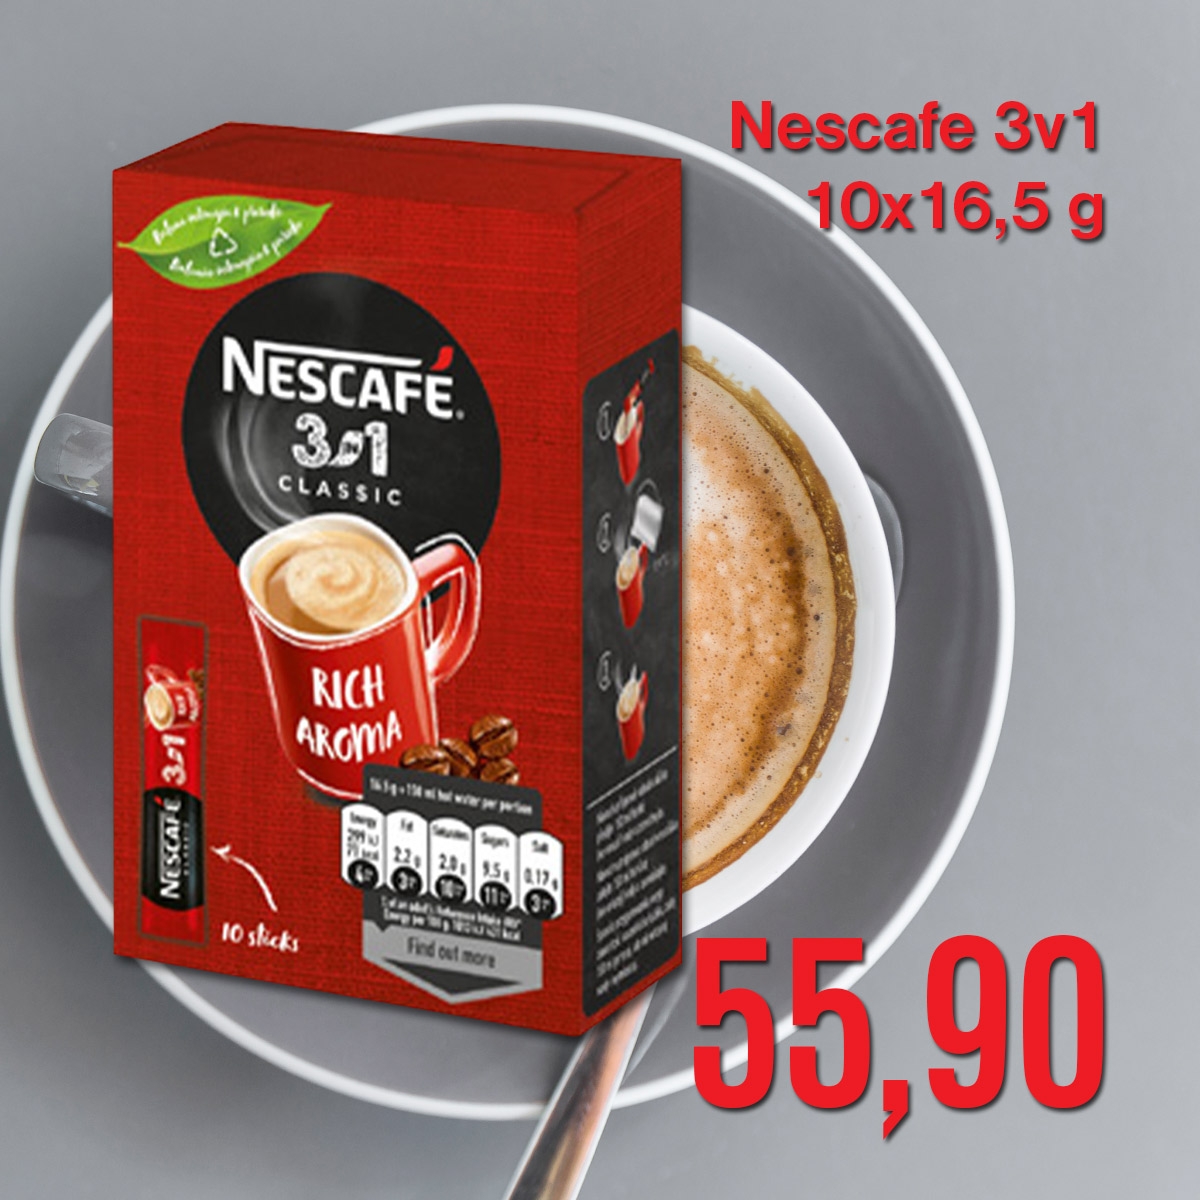 Nescafe 3v1 10x16,5 g